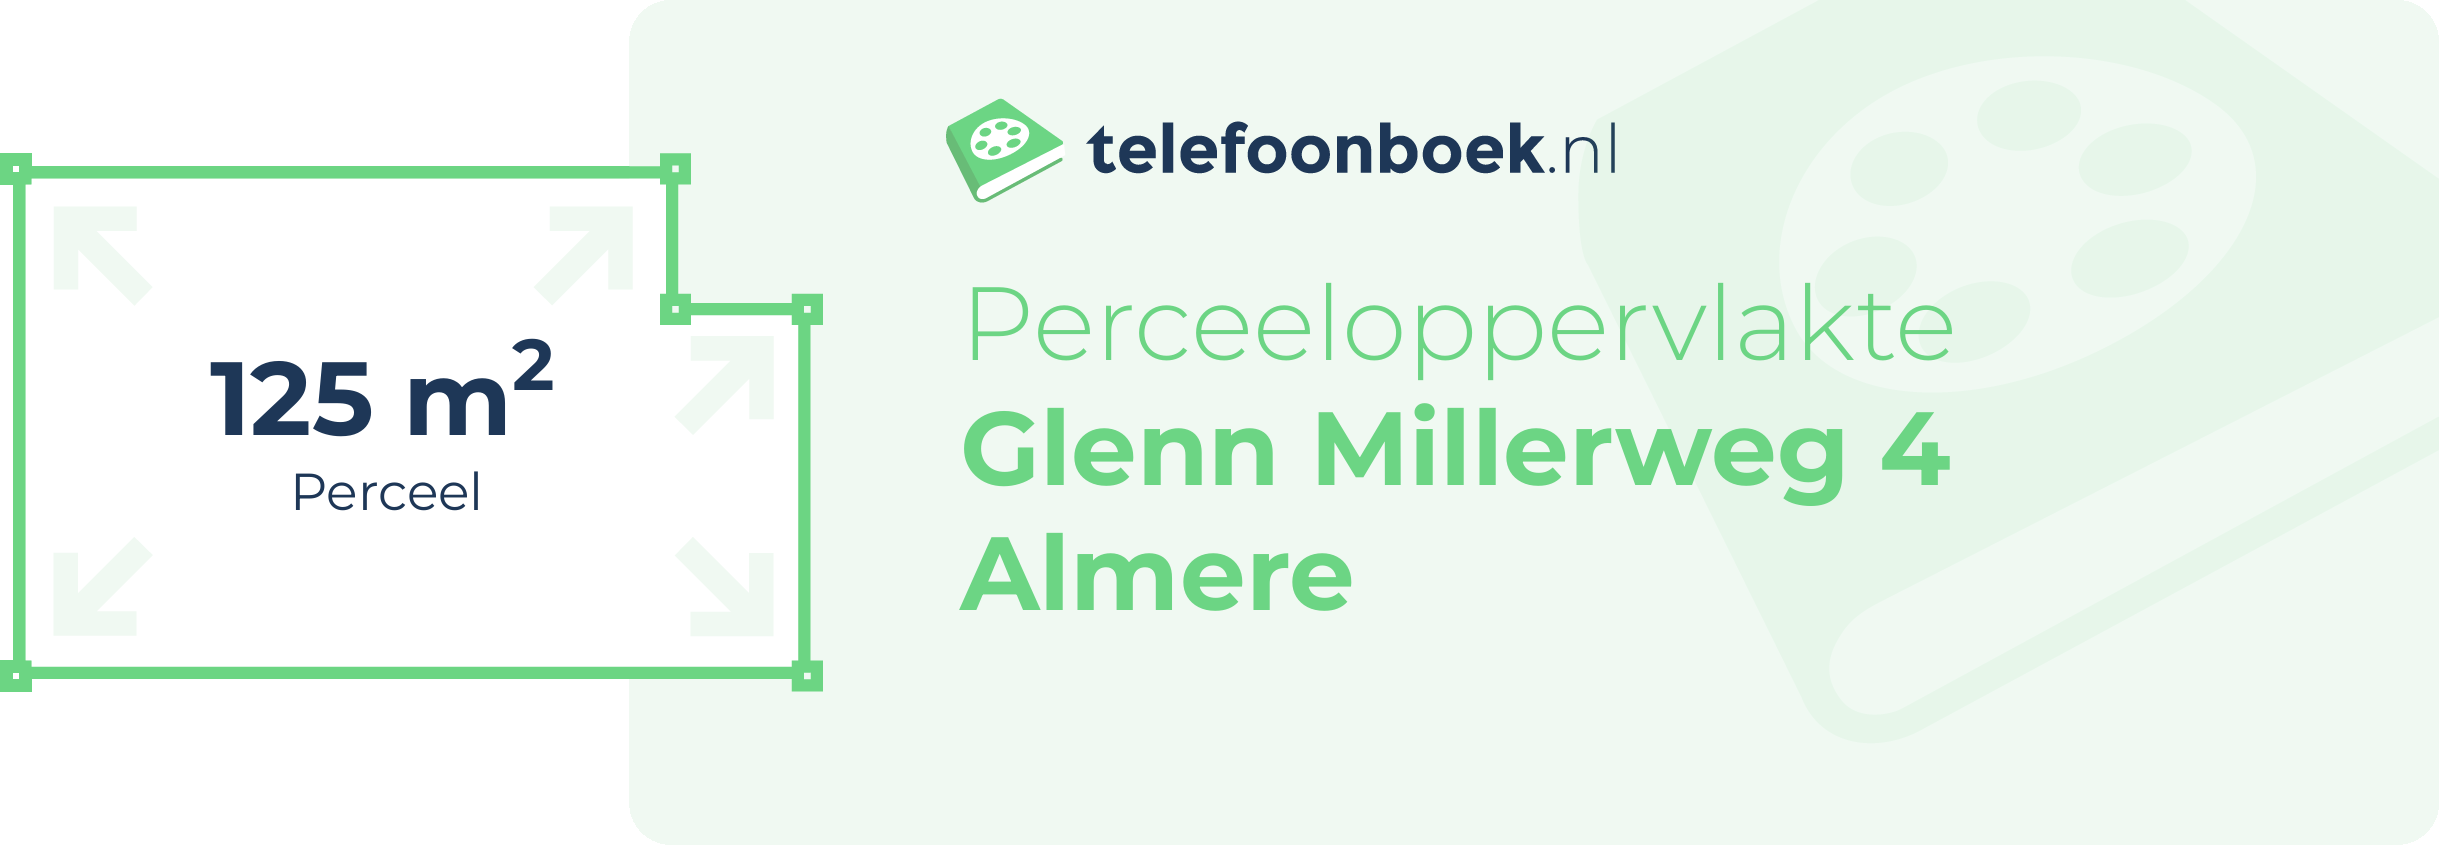 Perceeloppervlakte Glenn Millerweg 4 Almere